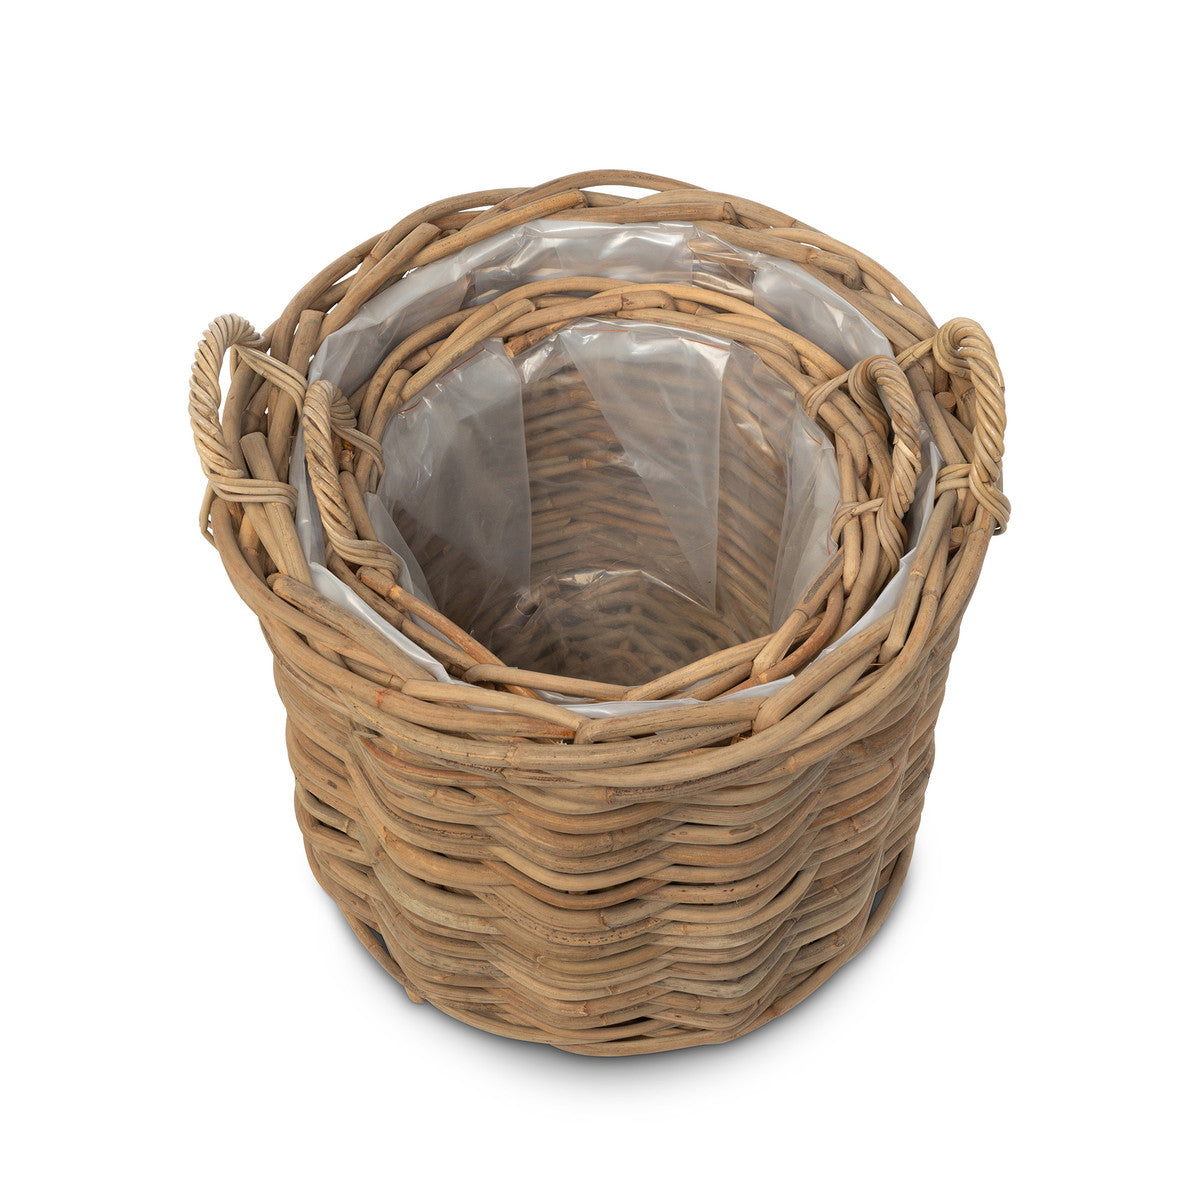 Cabana Collection Ratan Woven Wood Basket & Bowl